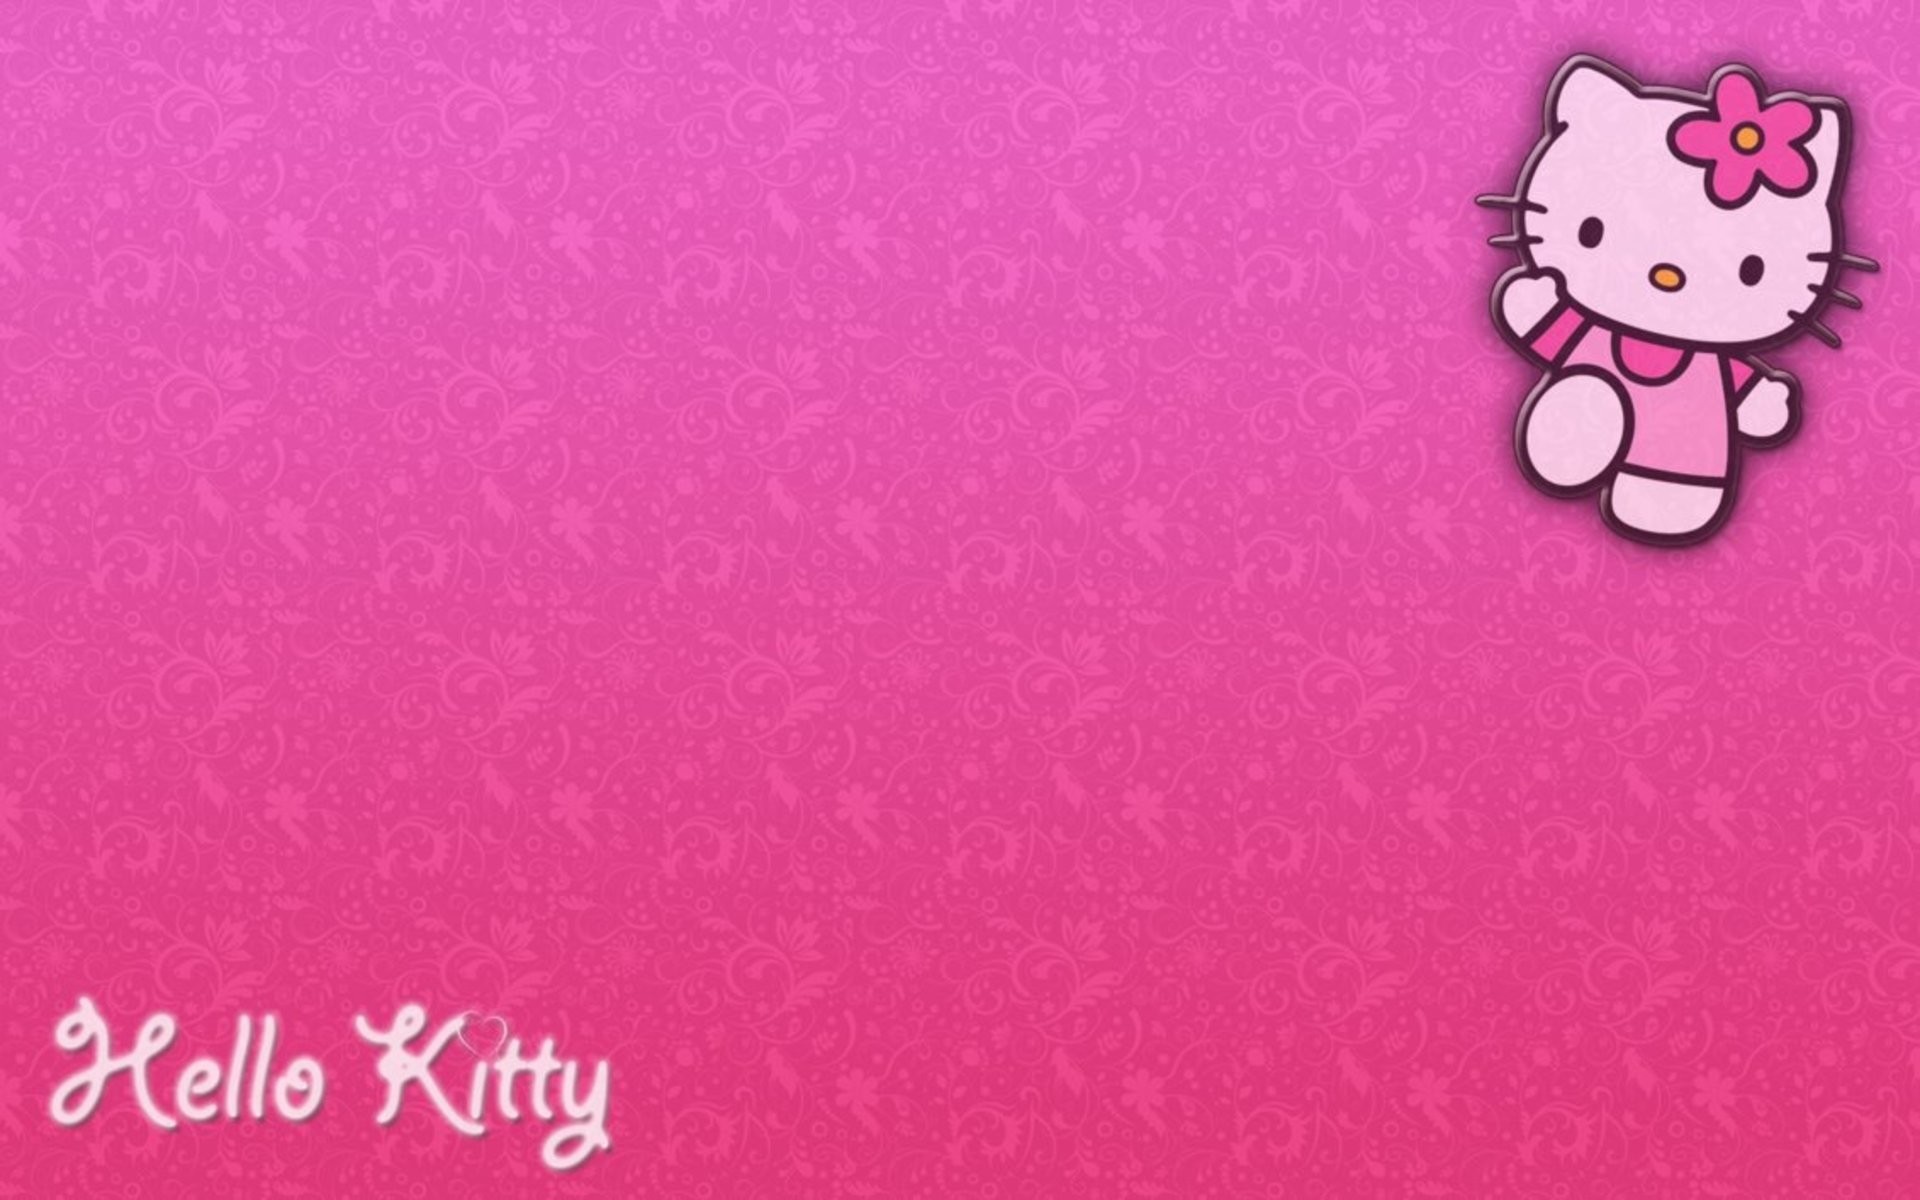 Hình ảnh Hello Kitty cute, dễ thương và đẹp nhất dành cho các bạn gái